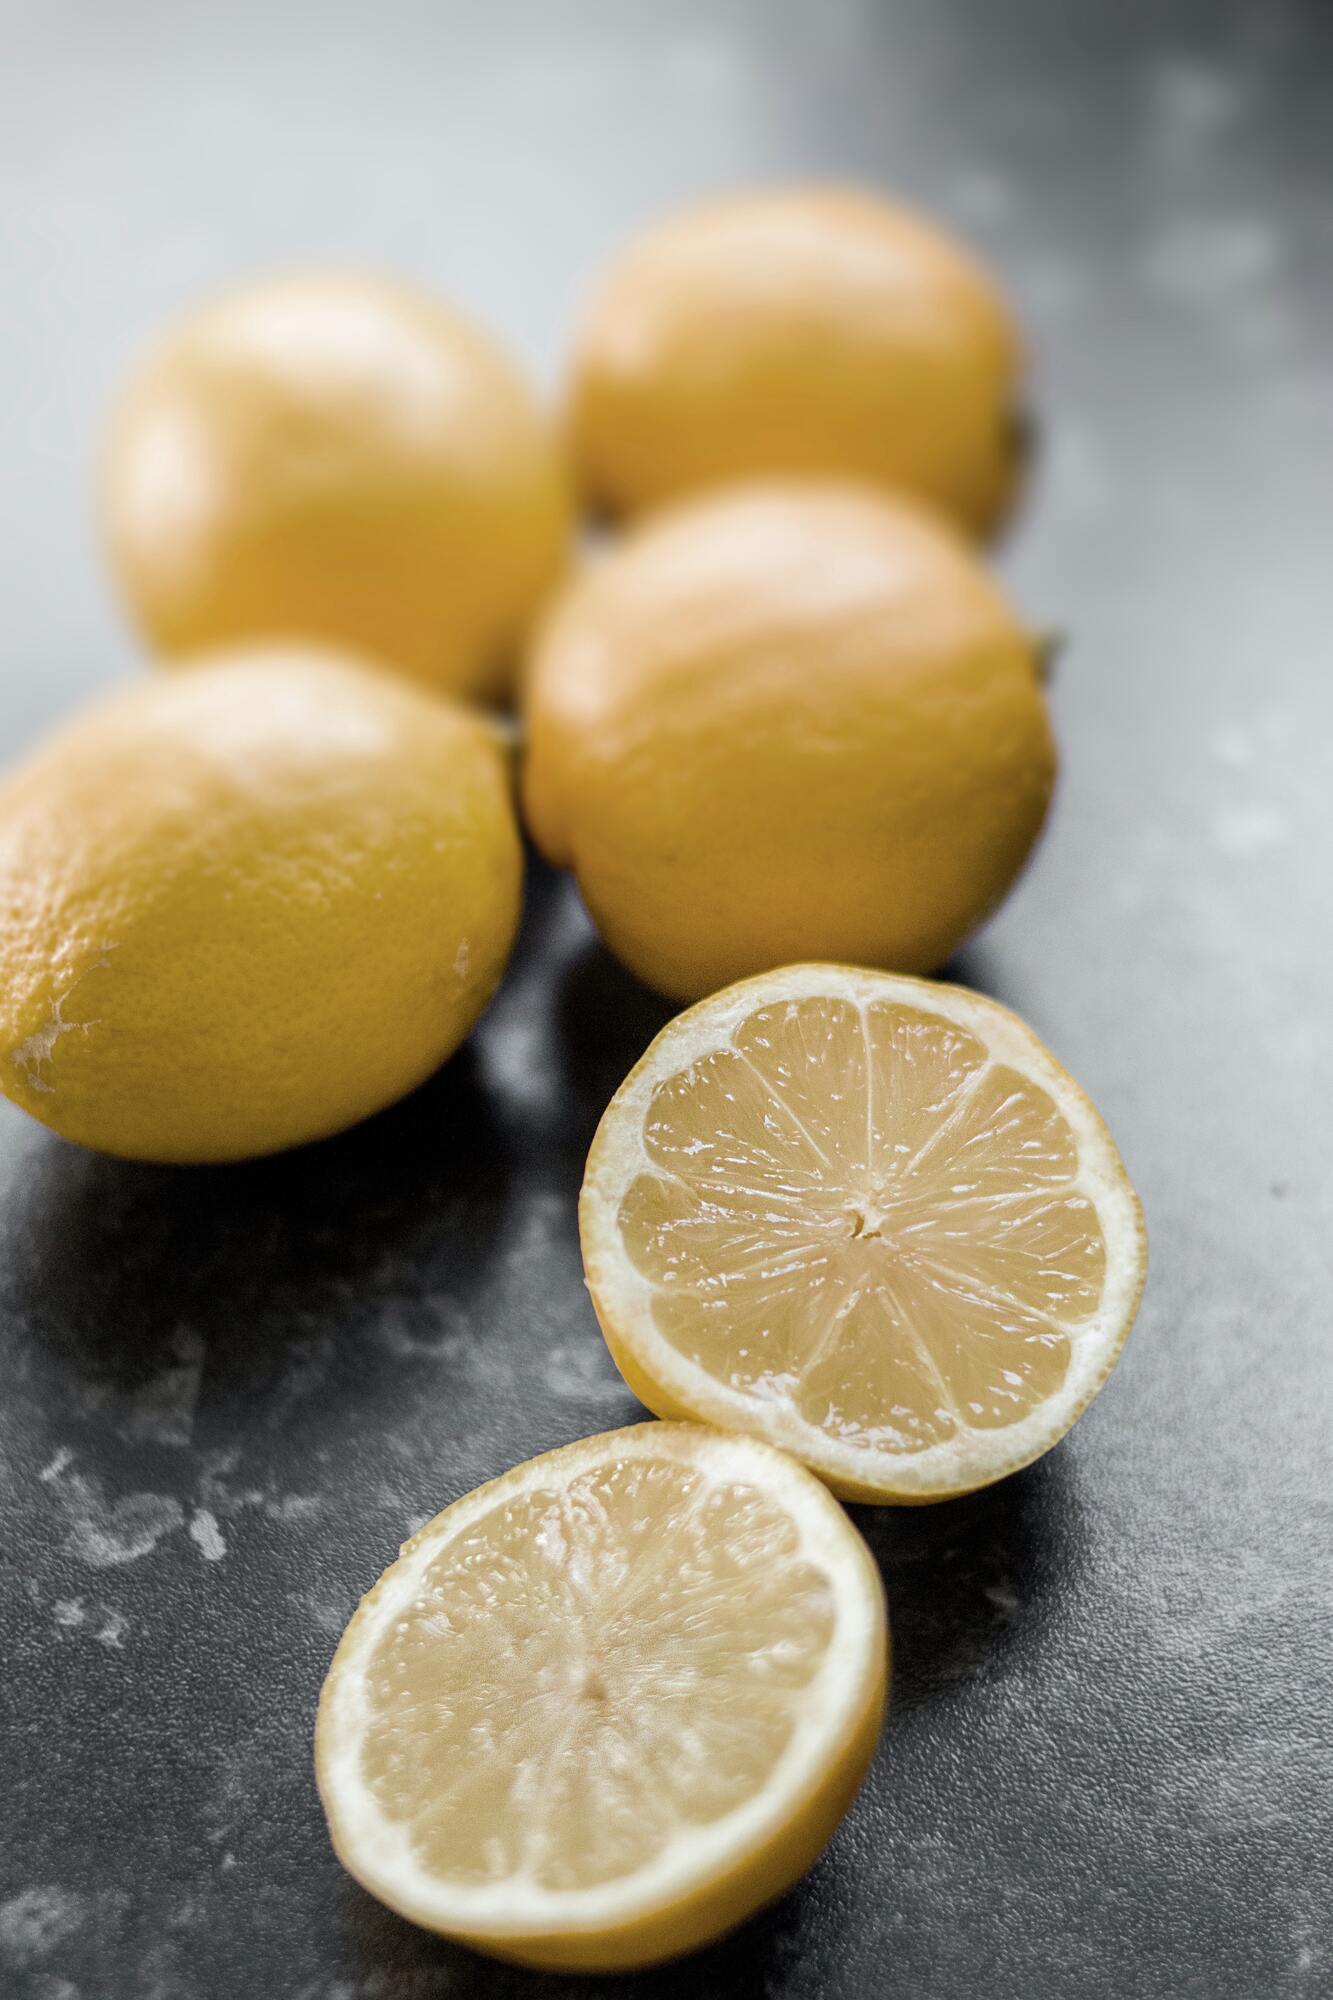 Лимонный сок для маринада